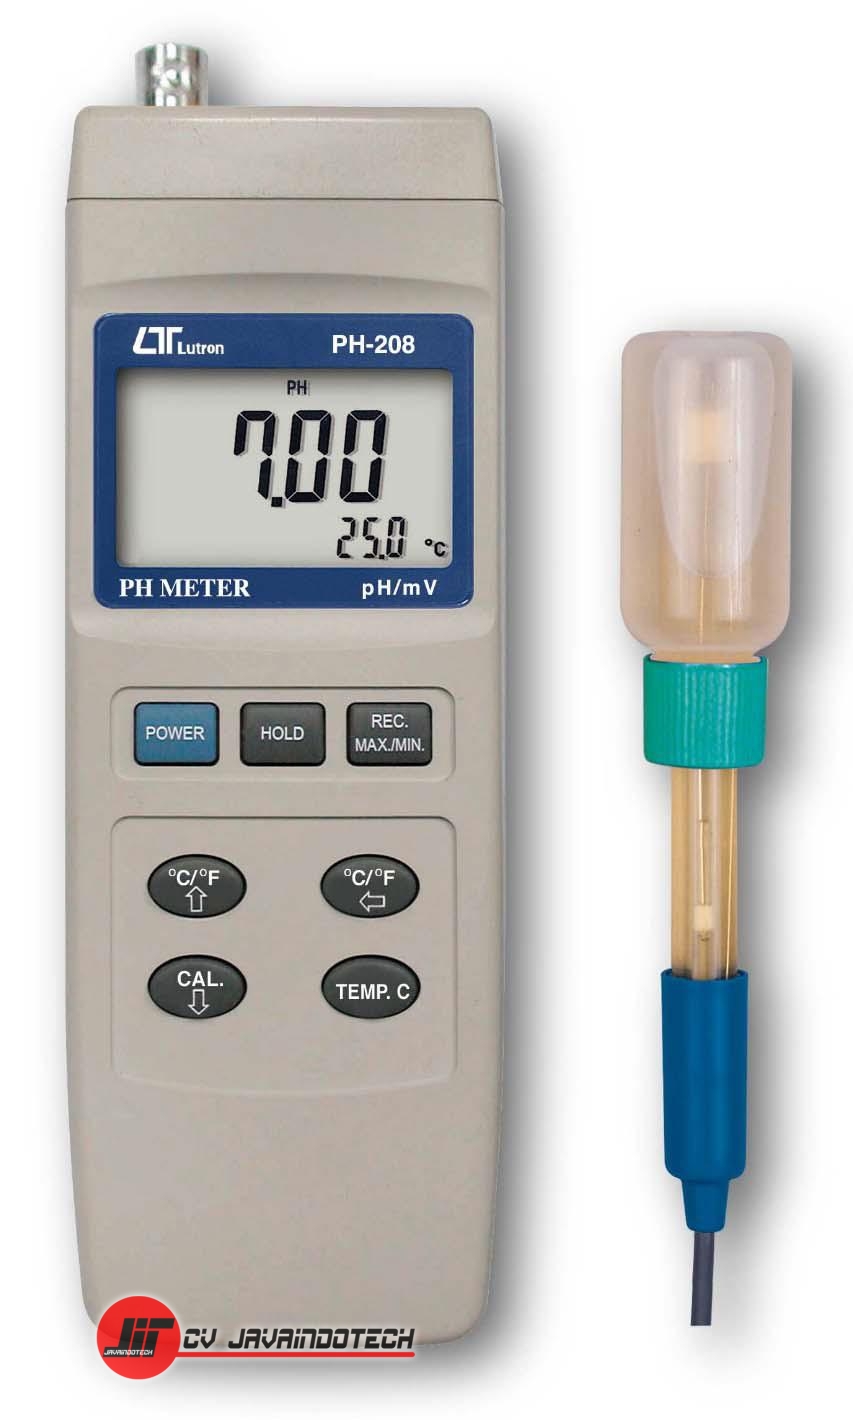 Review, Spesifikasi, dan Harga Jual pH Meter Lutron PH-208 pH Meter original, termurah, dan bergaransi resmi